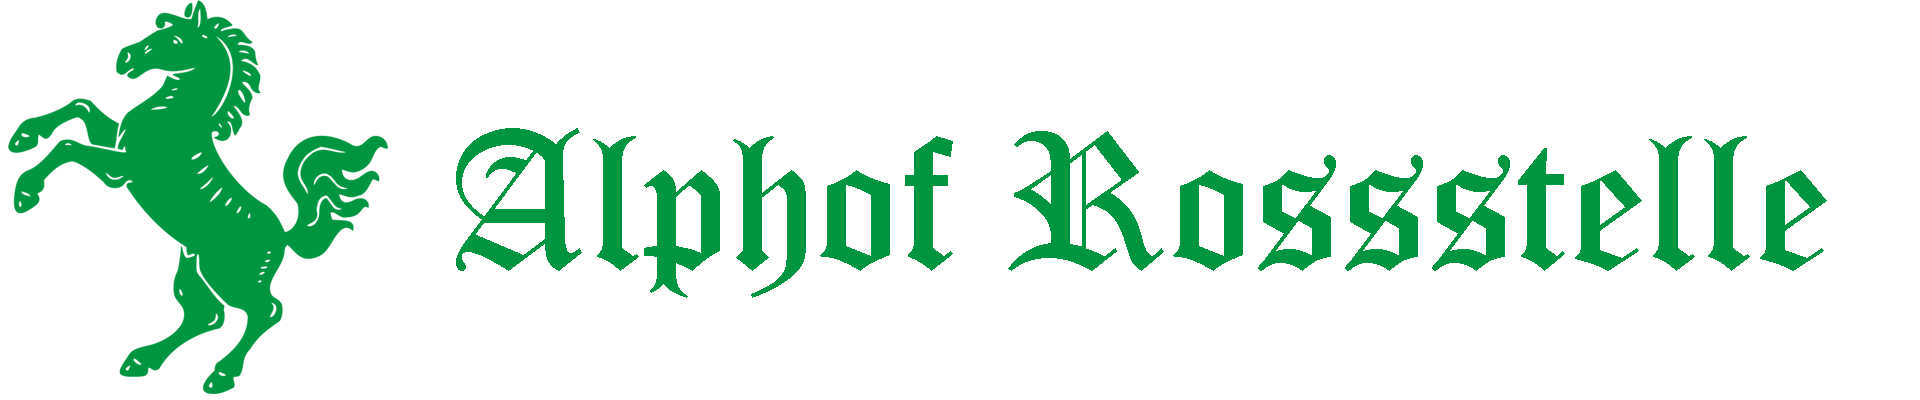 Alphof Rossstelle logo